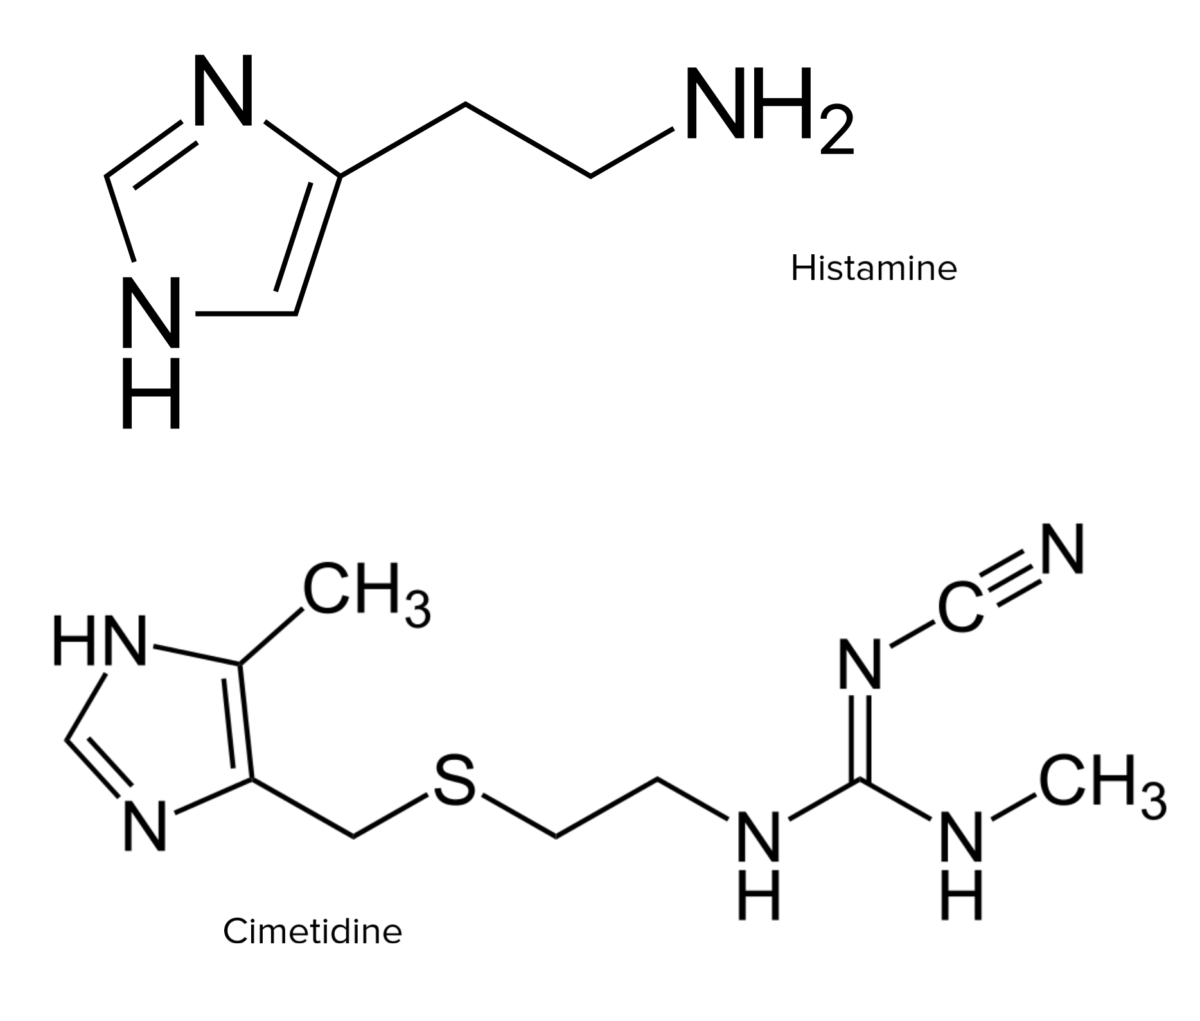 Estructuras químicas de histamina y cimetidina.